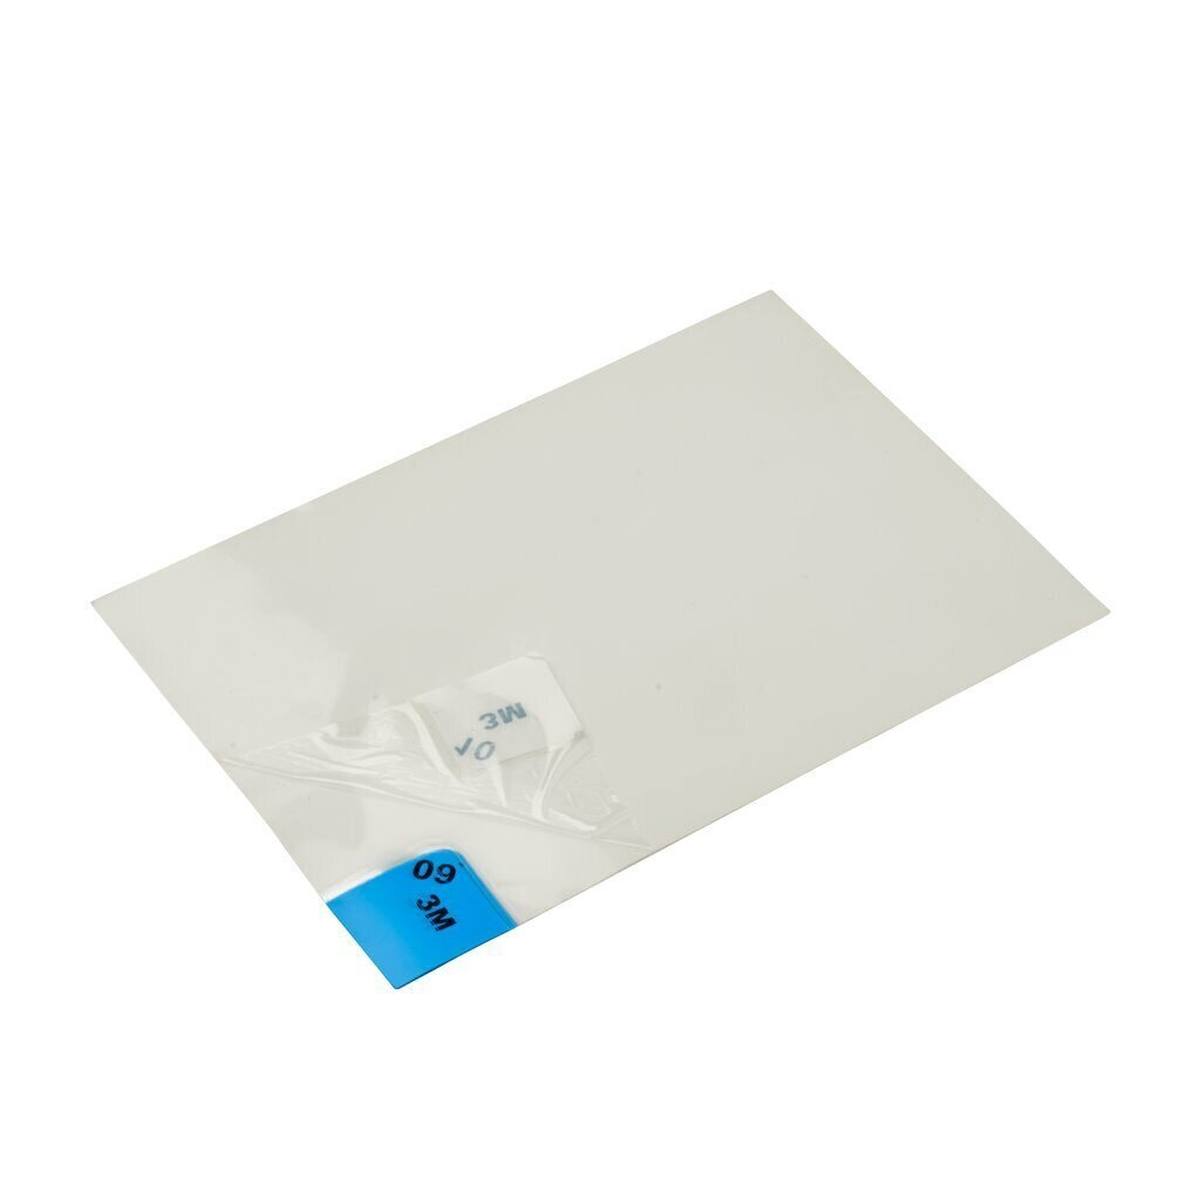 3M 4300 Nomad Tappetino adesivo per polveri sottili, bianco, 1,15 m x 0,6 m, 40 pezzi strati di polietilene trasparente